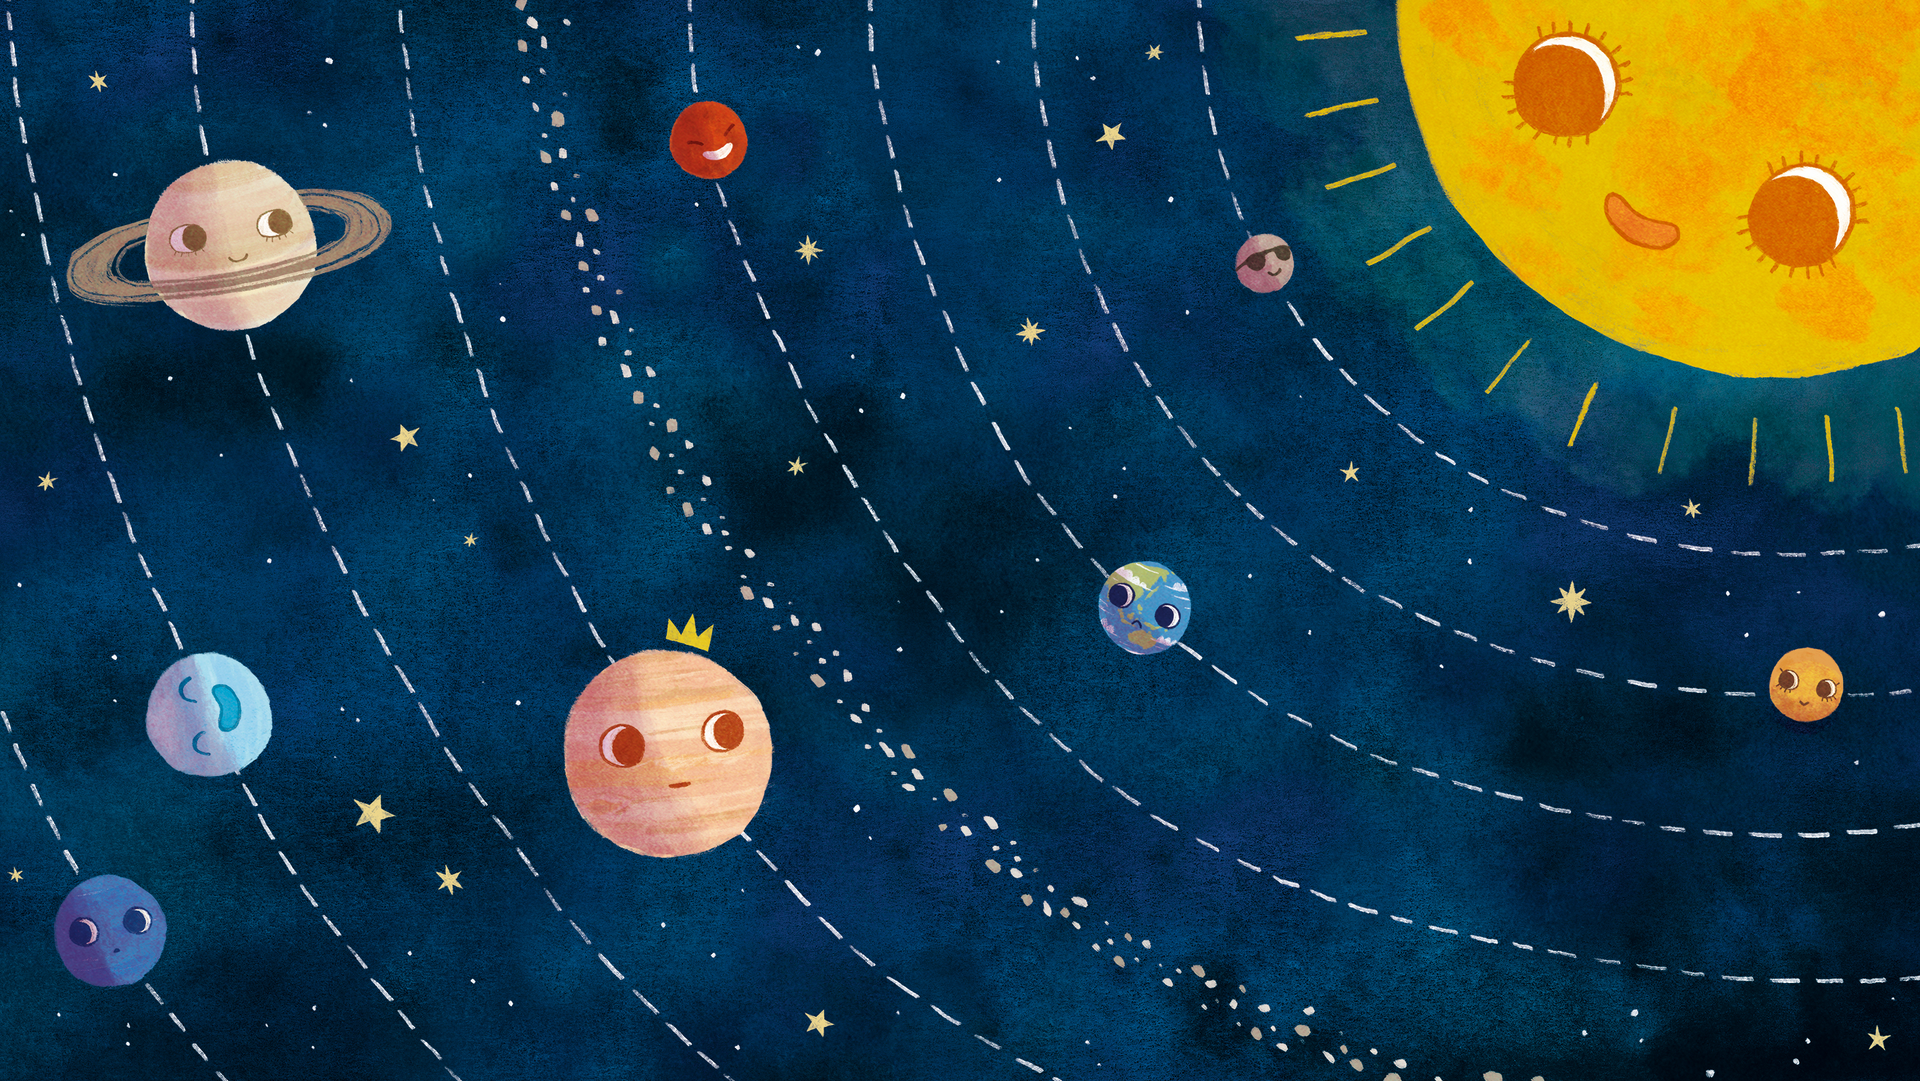 Illustration von Maren Hasenjäger: Unser Sonnensystem, dargestellt mit lächelnden Planeten. Die Sonne befindet sich in der rechten oberen Ecke und schaut auf die acht Planeten, die in regelmäßigen Abständen verteilt sind.